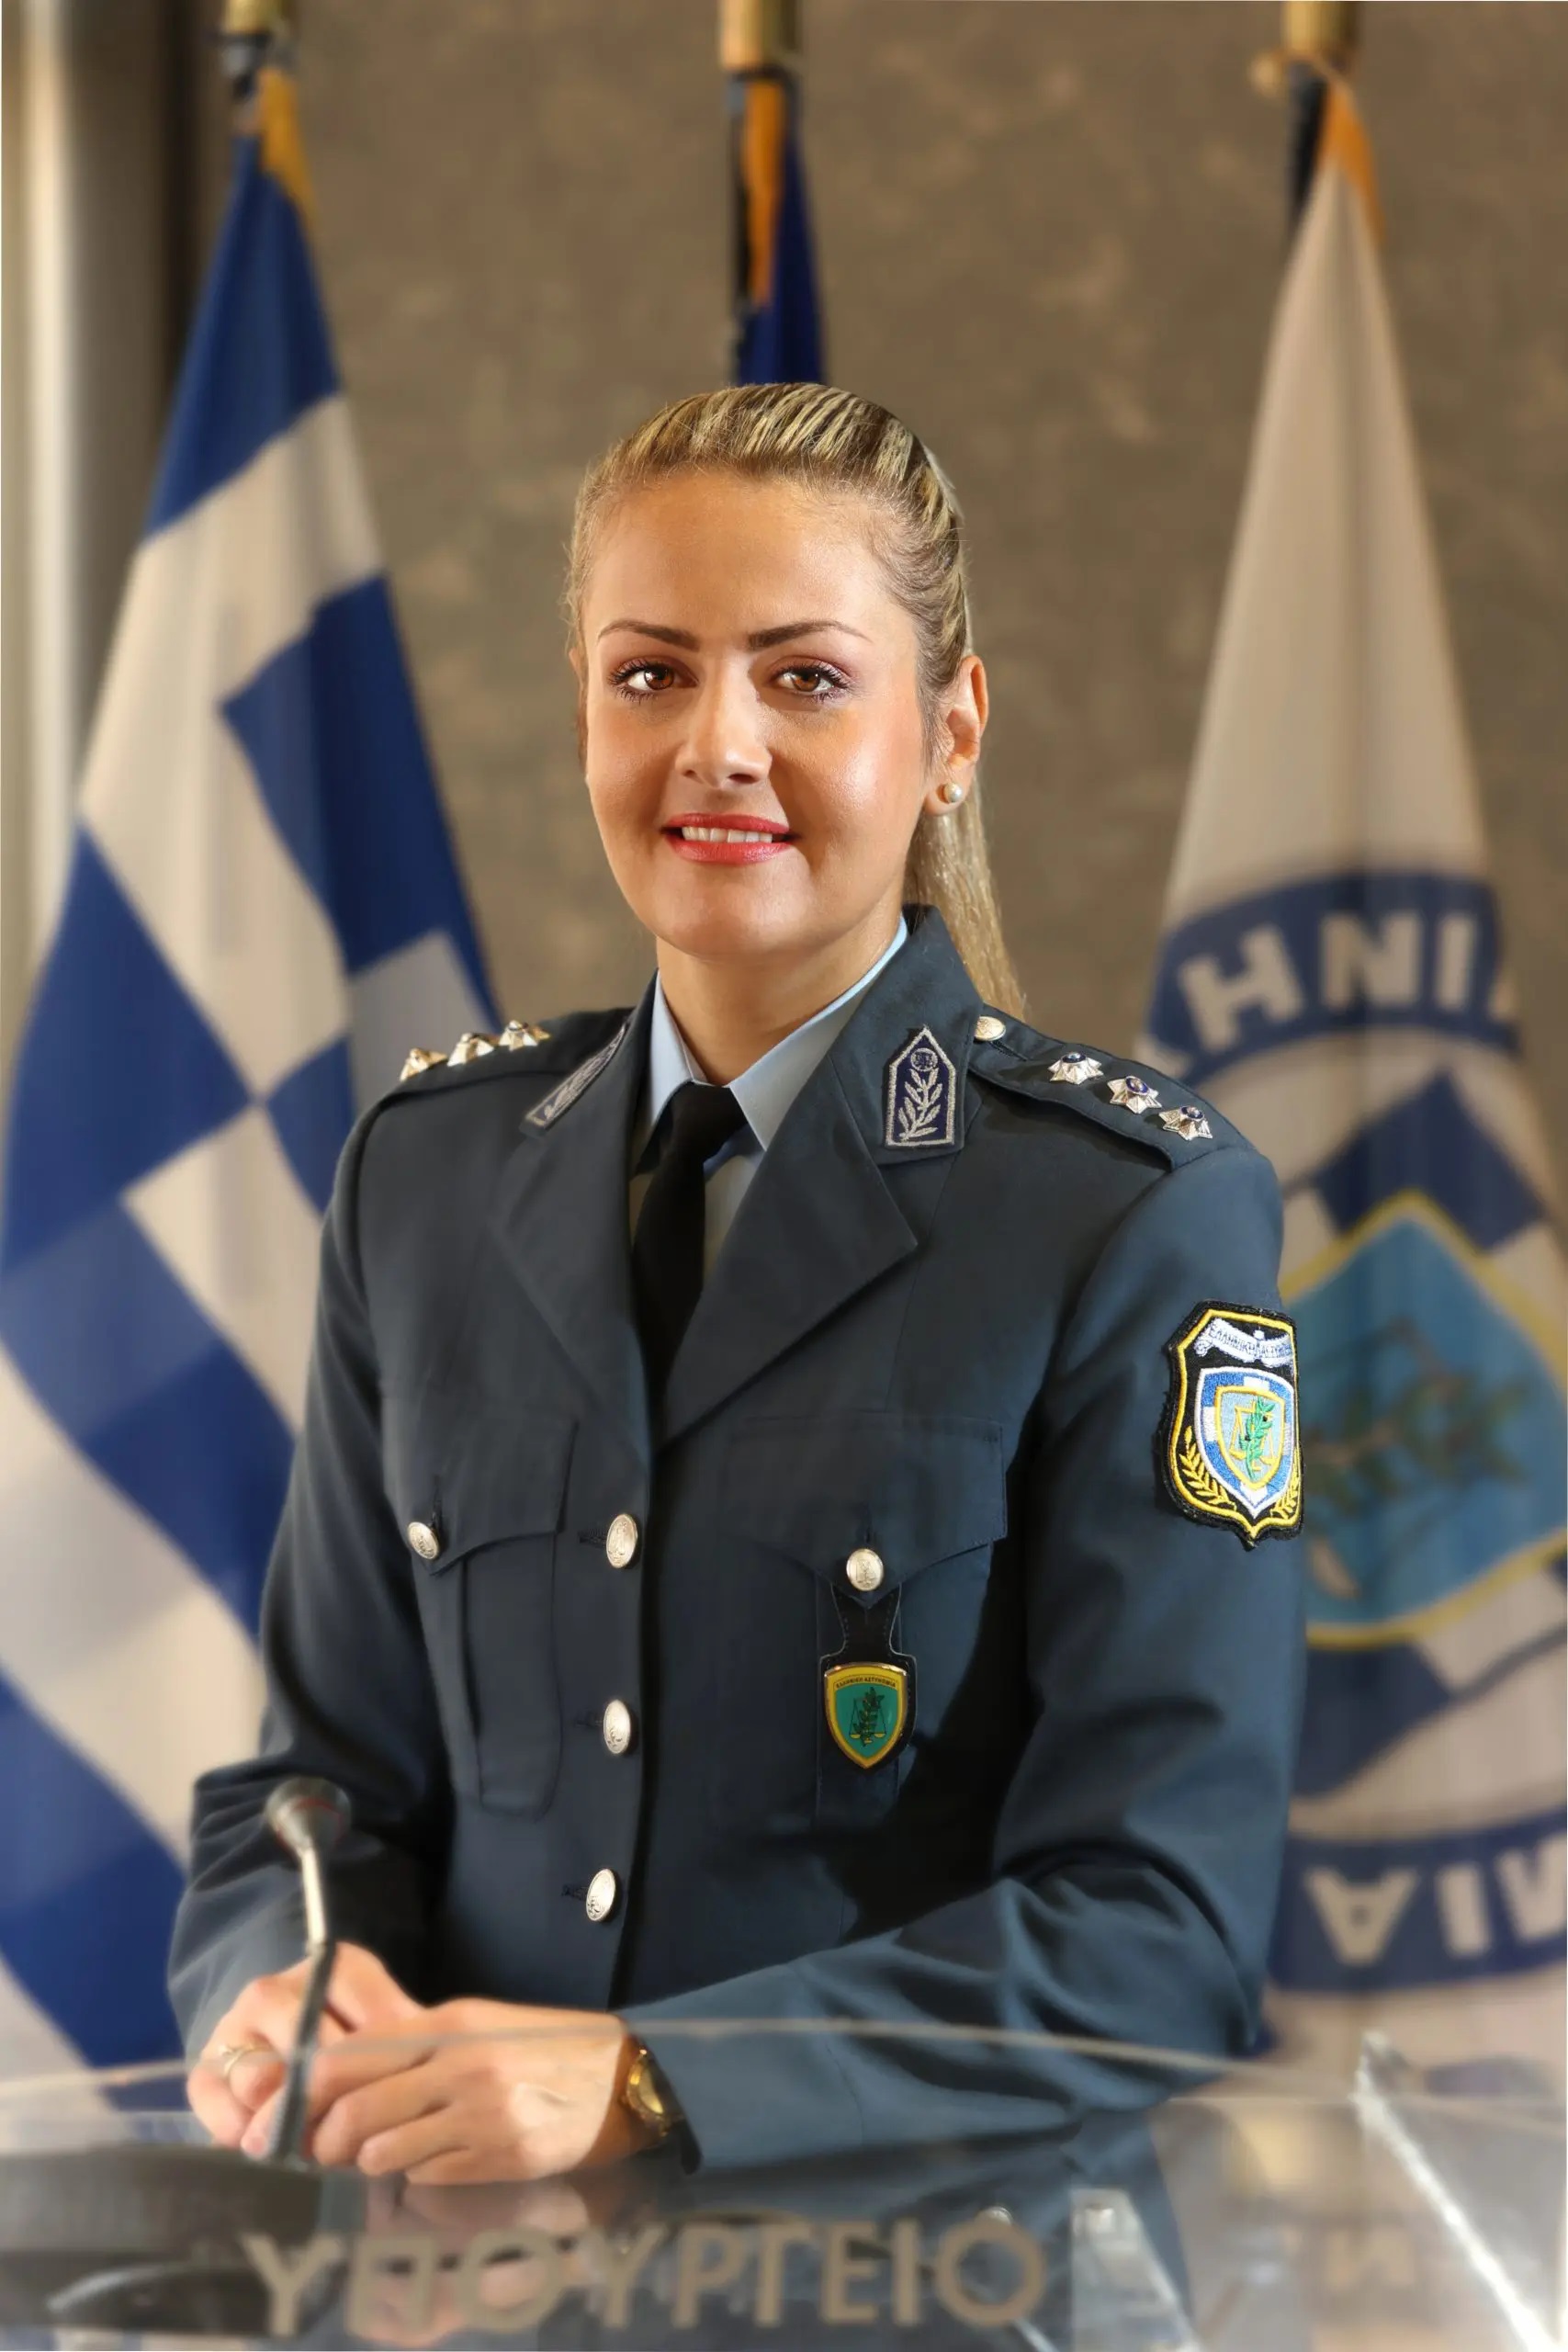 Κωνσταντία Δημογλίδου, Εκπρόσωπος Τύπου της Ελληνικής Αστυνομίας